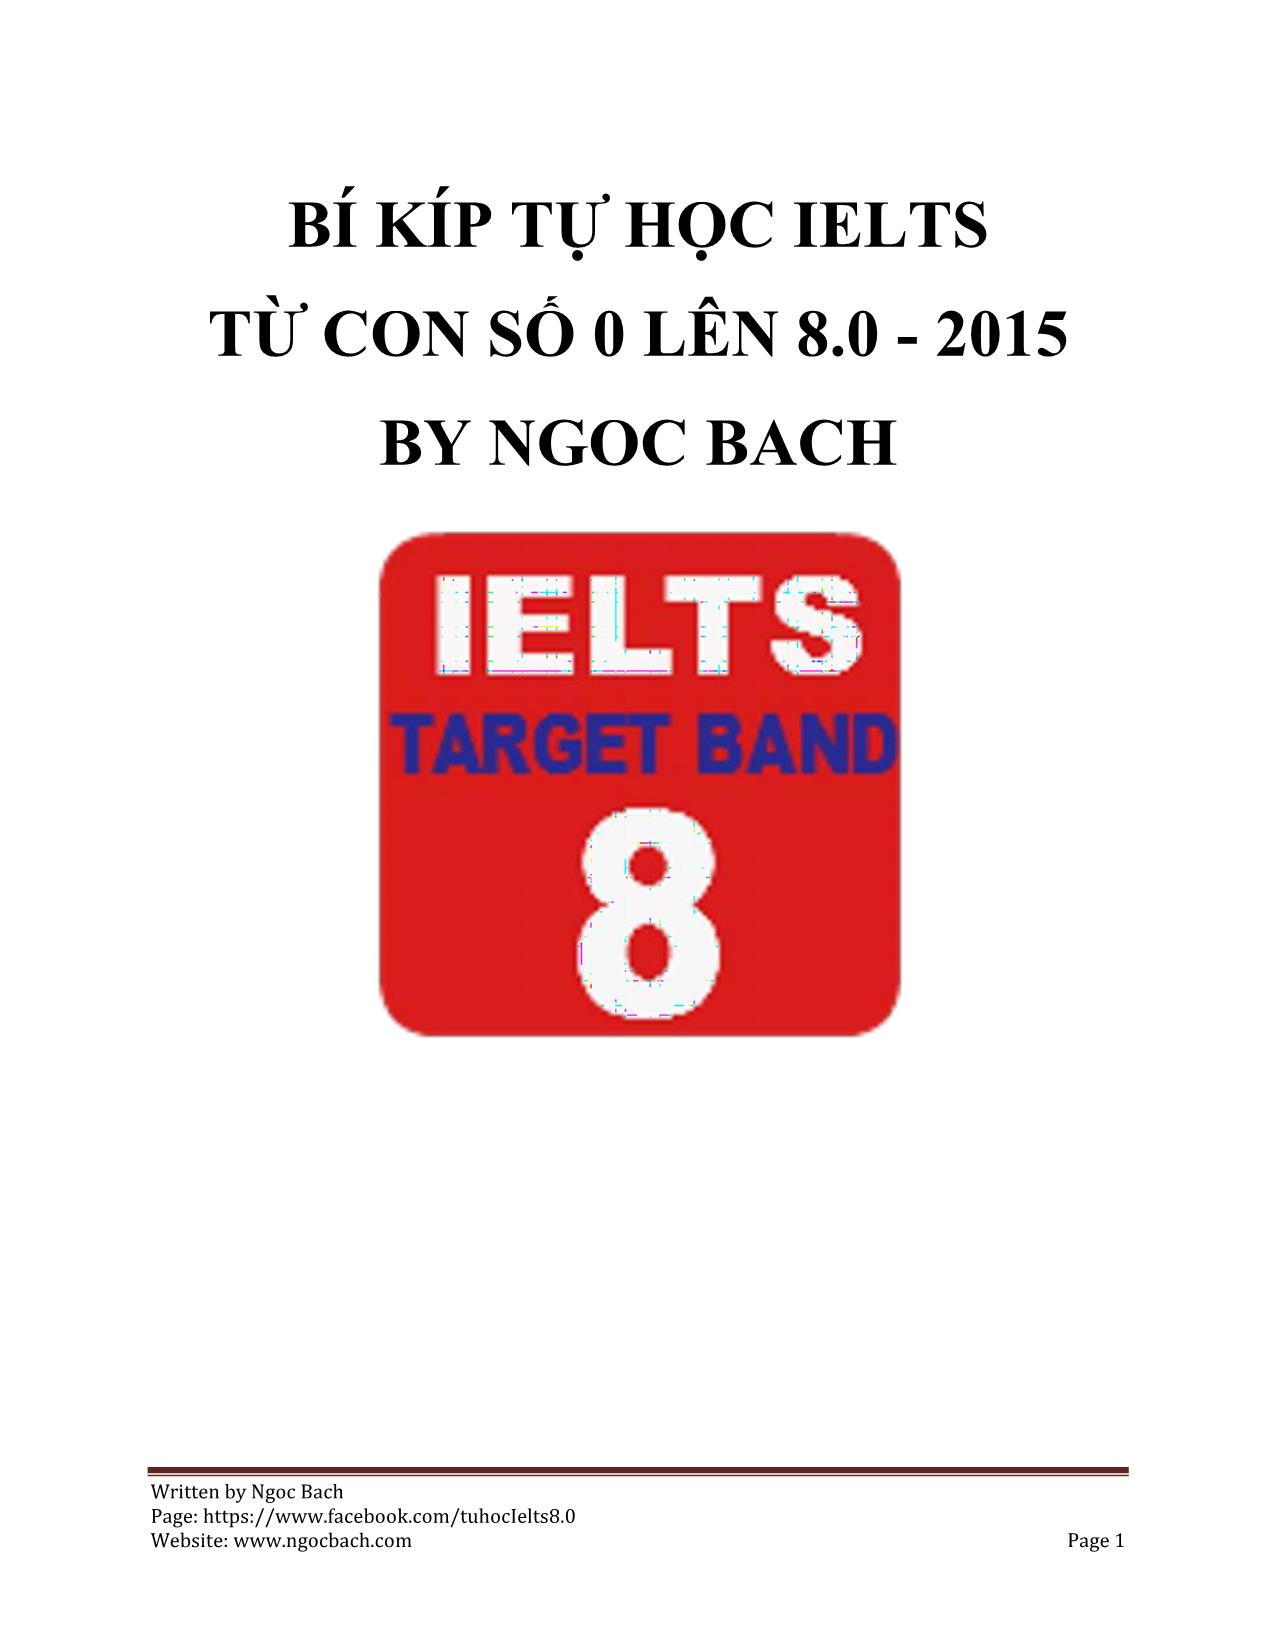 Bí kíp tự học Ielts từ con số 0 lên 8.0 - 2015 by ngoc bach trang 1